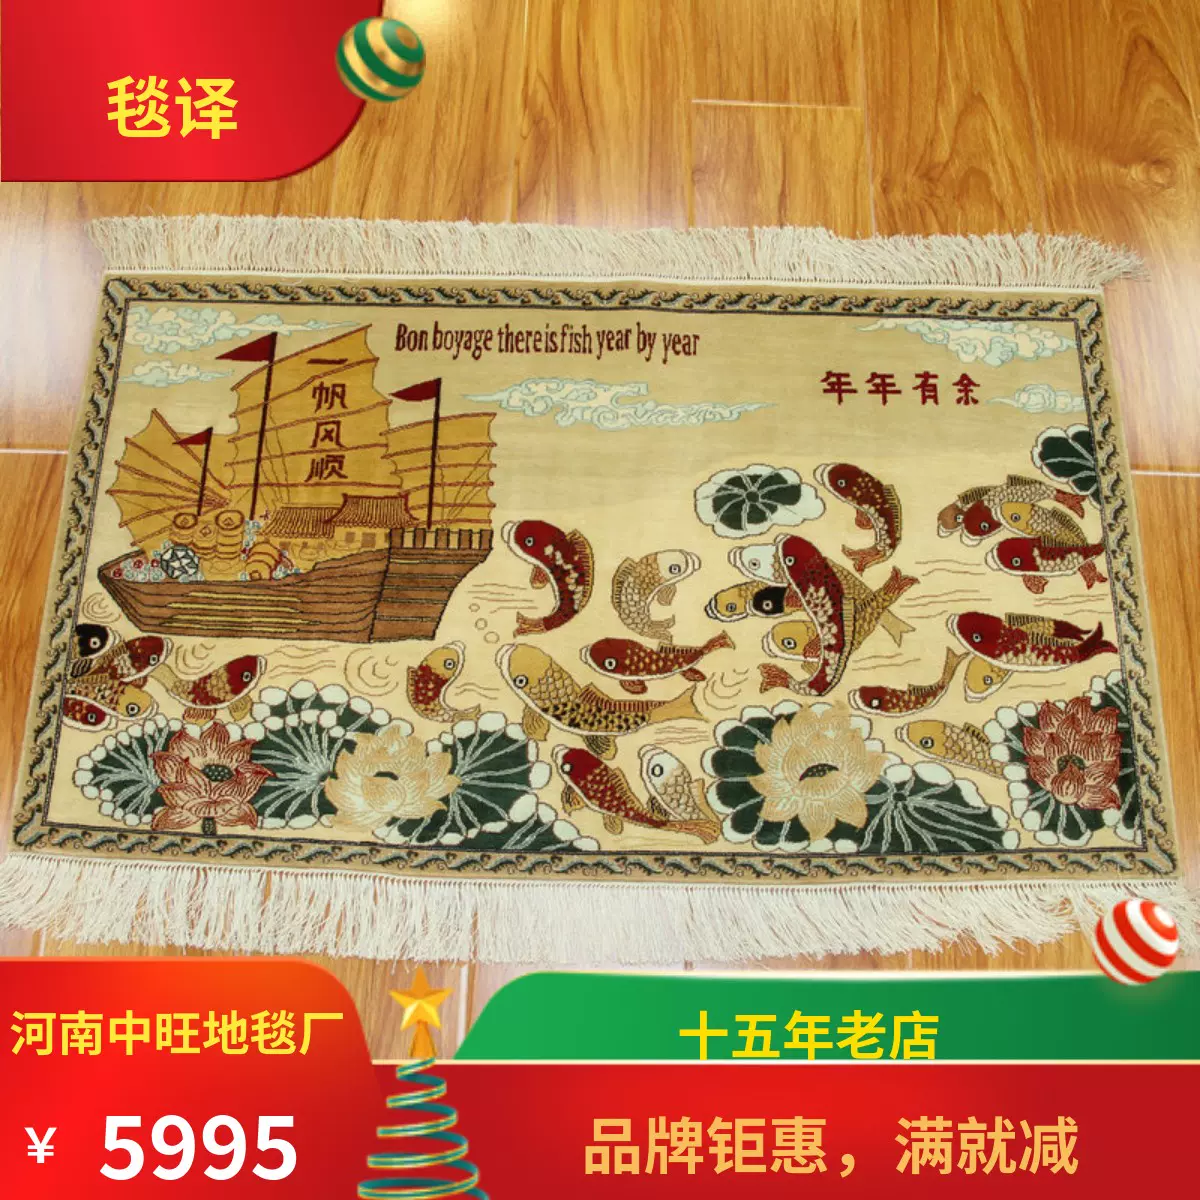 毯译1厘米11个结年年有余一帆风顺手工真丝艺术丝毯95x55厘米-Taobao